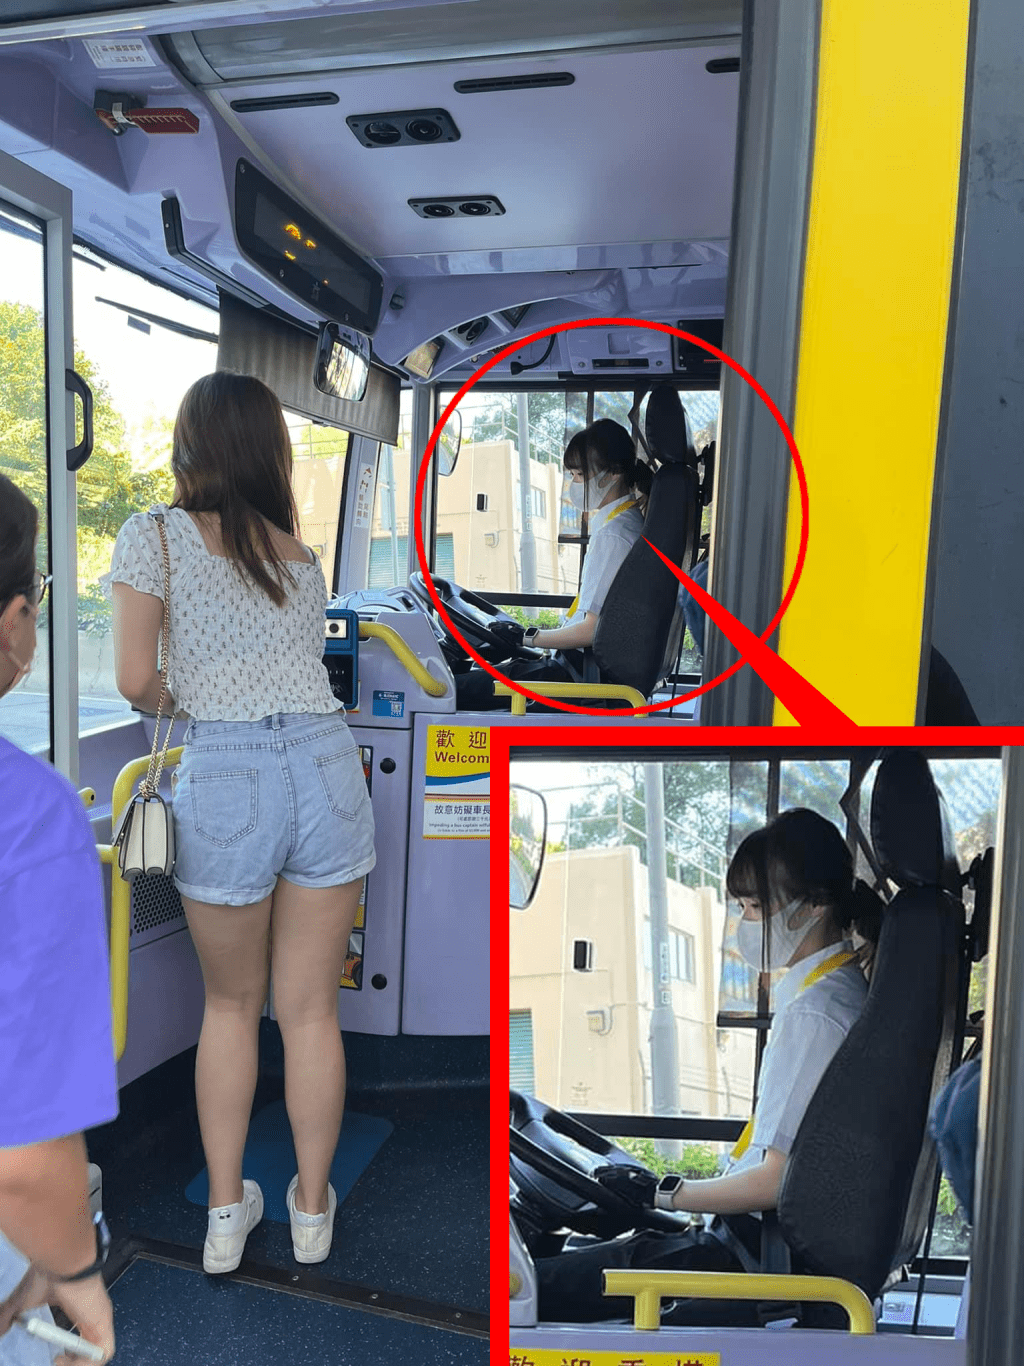 城巴「新仙氣女車長」的相片雖只有這一張，而且離遠拍攝，女車長又戴著口罩，但此消息已引發網民熱議。